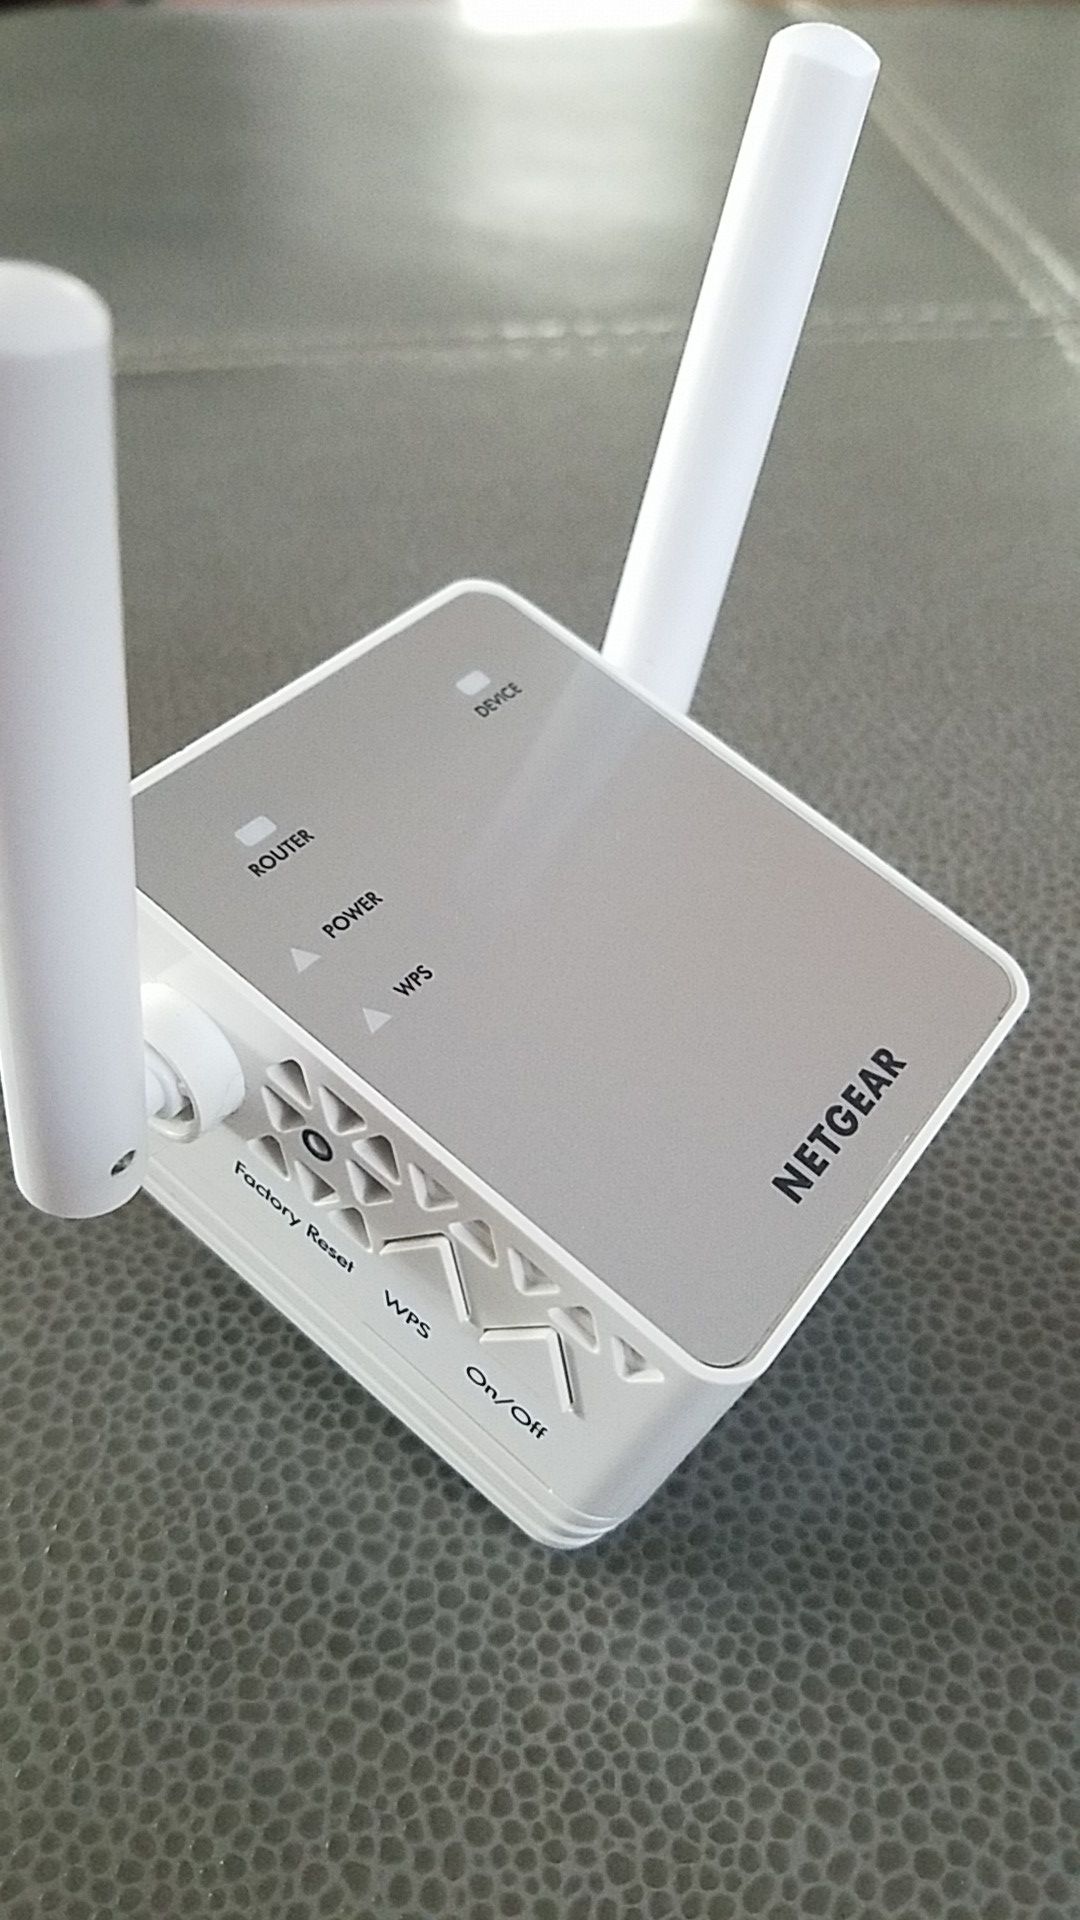 Netgear AC750 WiFi Router Range Extender Model: EX3700